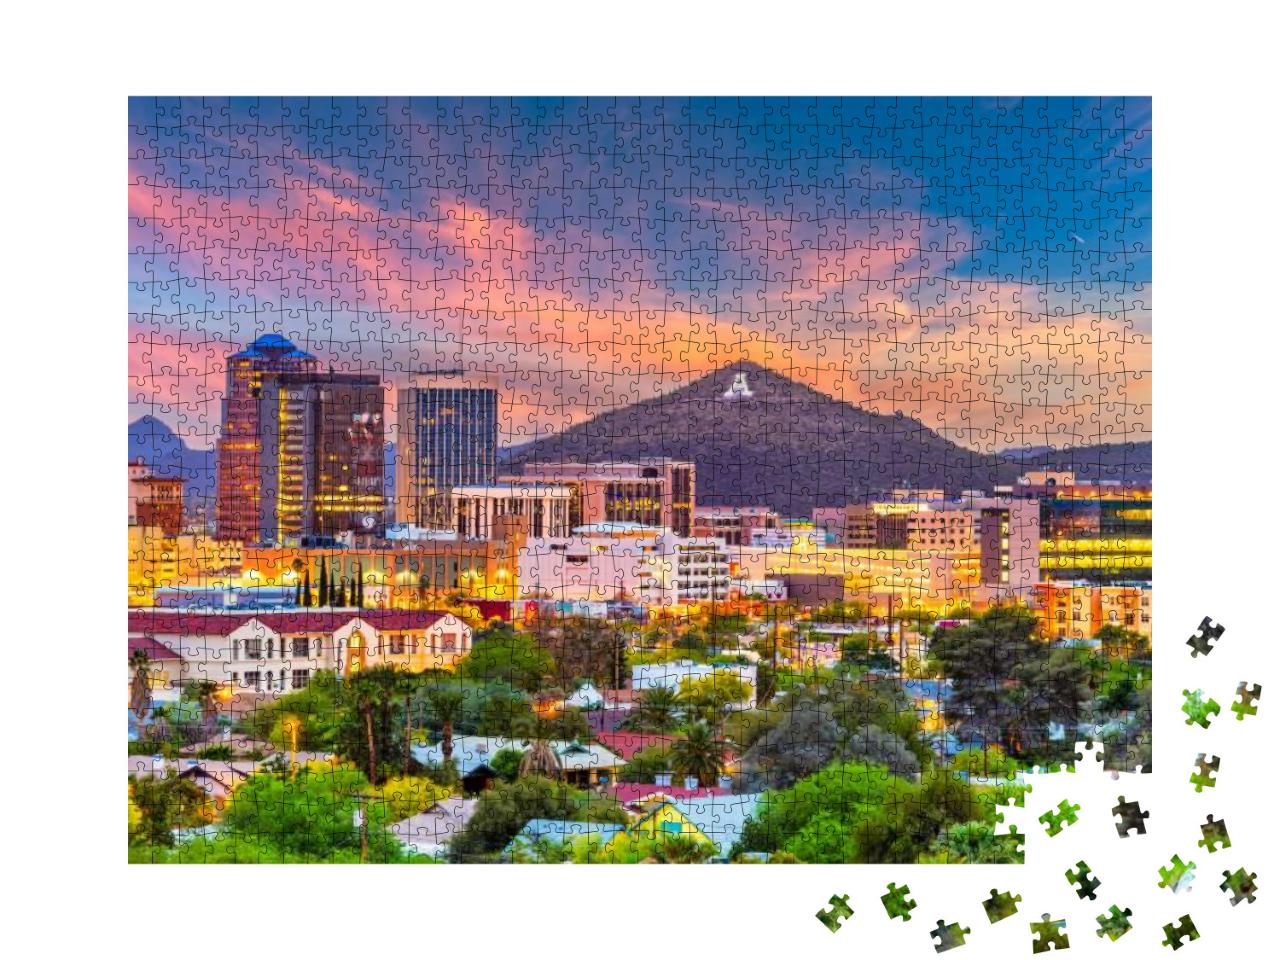 Tucson, Arizona, USA Downtown Skyline with Sentine... Jigsaw Puzzle with 1000 pieces